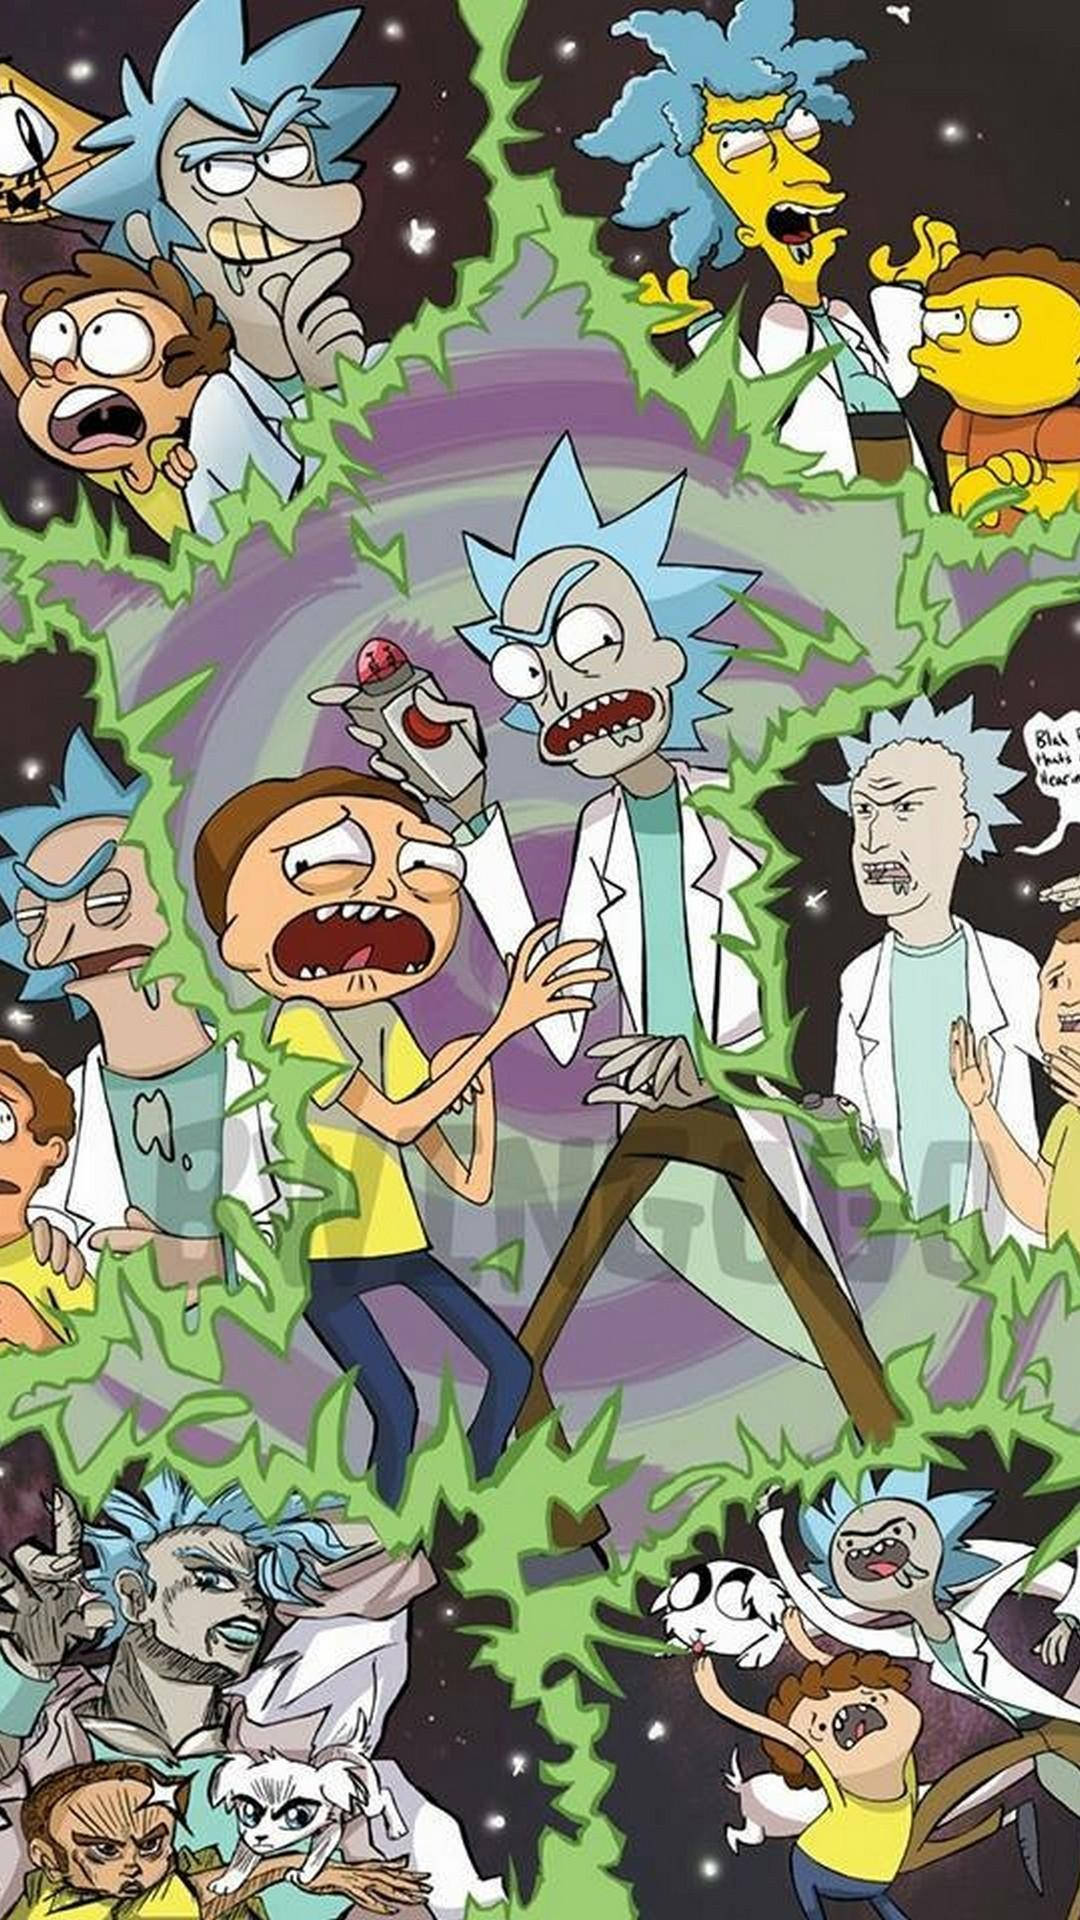 Personajesde Dibujos Animados De Rick Y Morty En Una Galaxia Fondo de pantalla